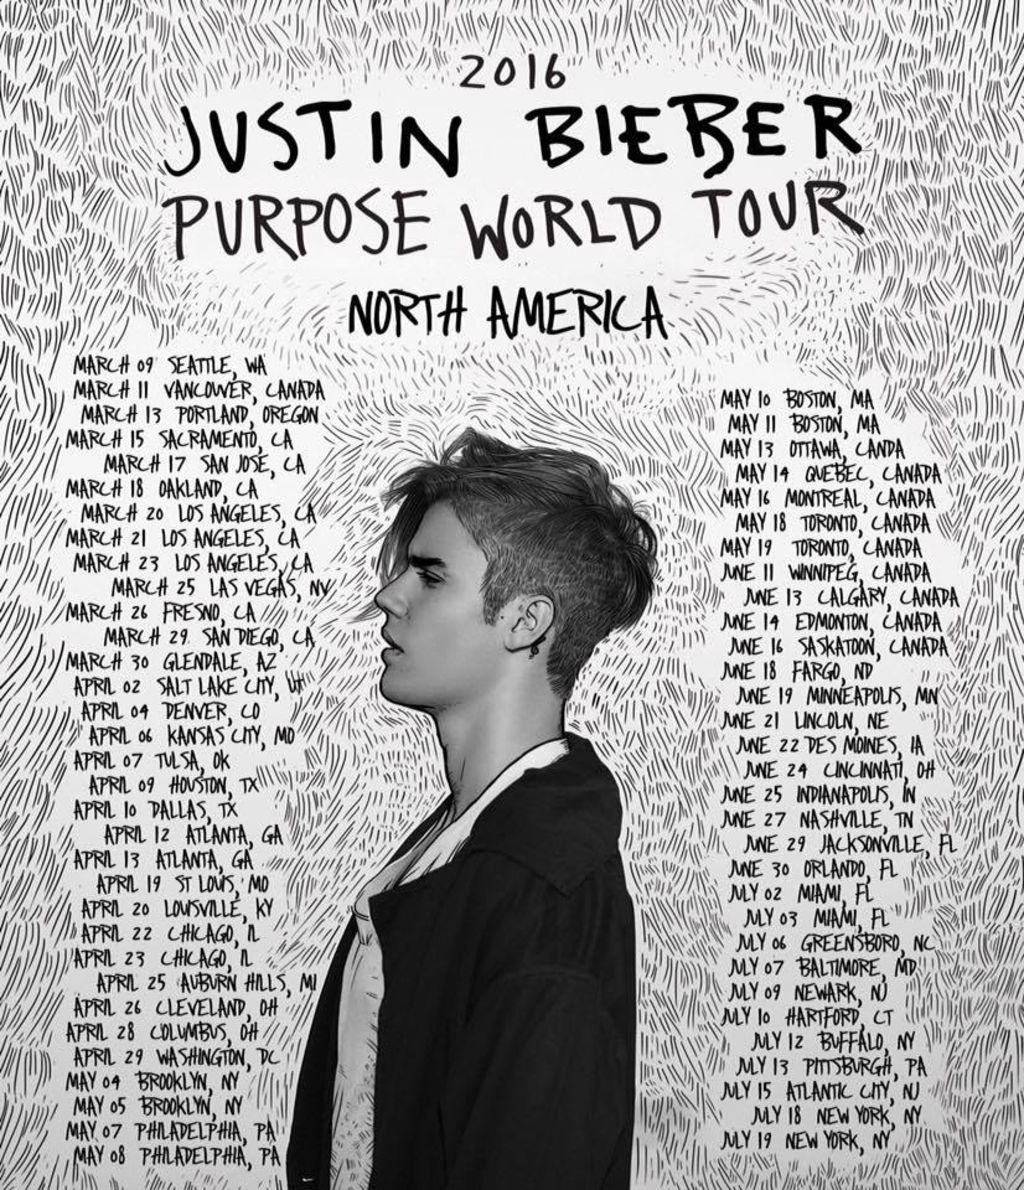 Bieber arranca hoy su Purpose World Tour